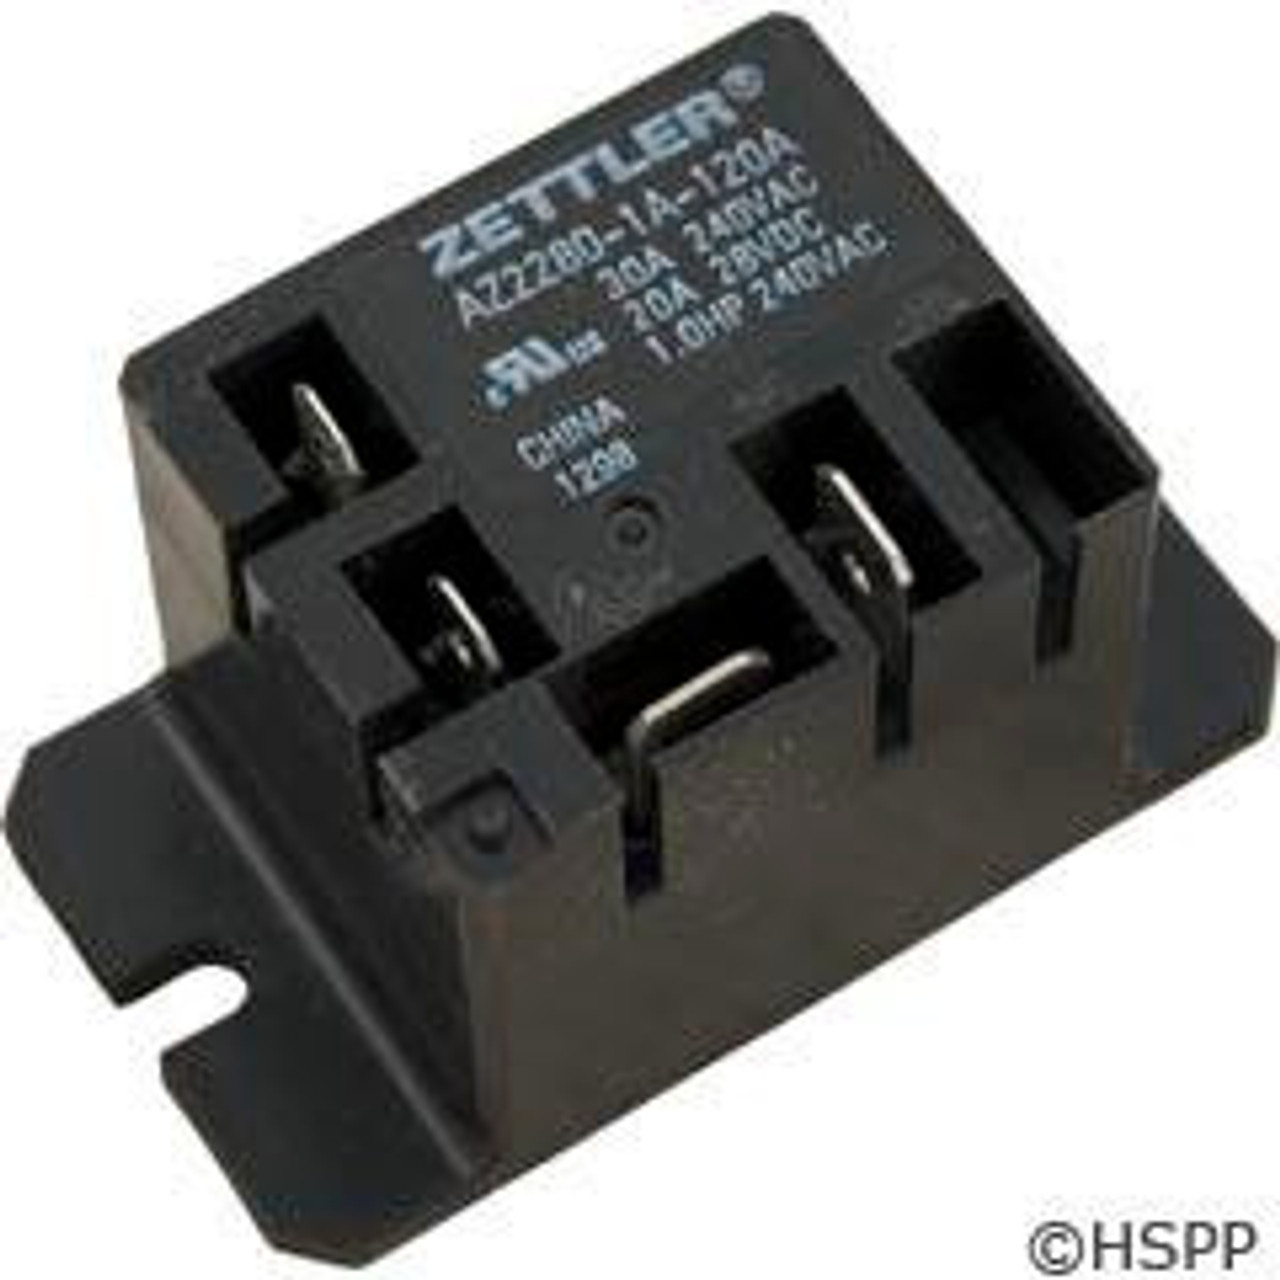 Power Relay, Zettler, SPST, 30A, 115v, Mini, Z2280-1A-120A